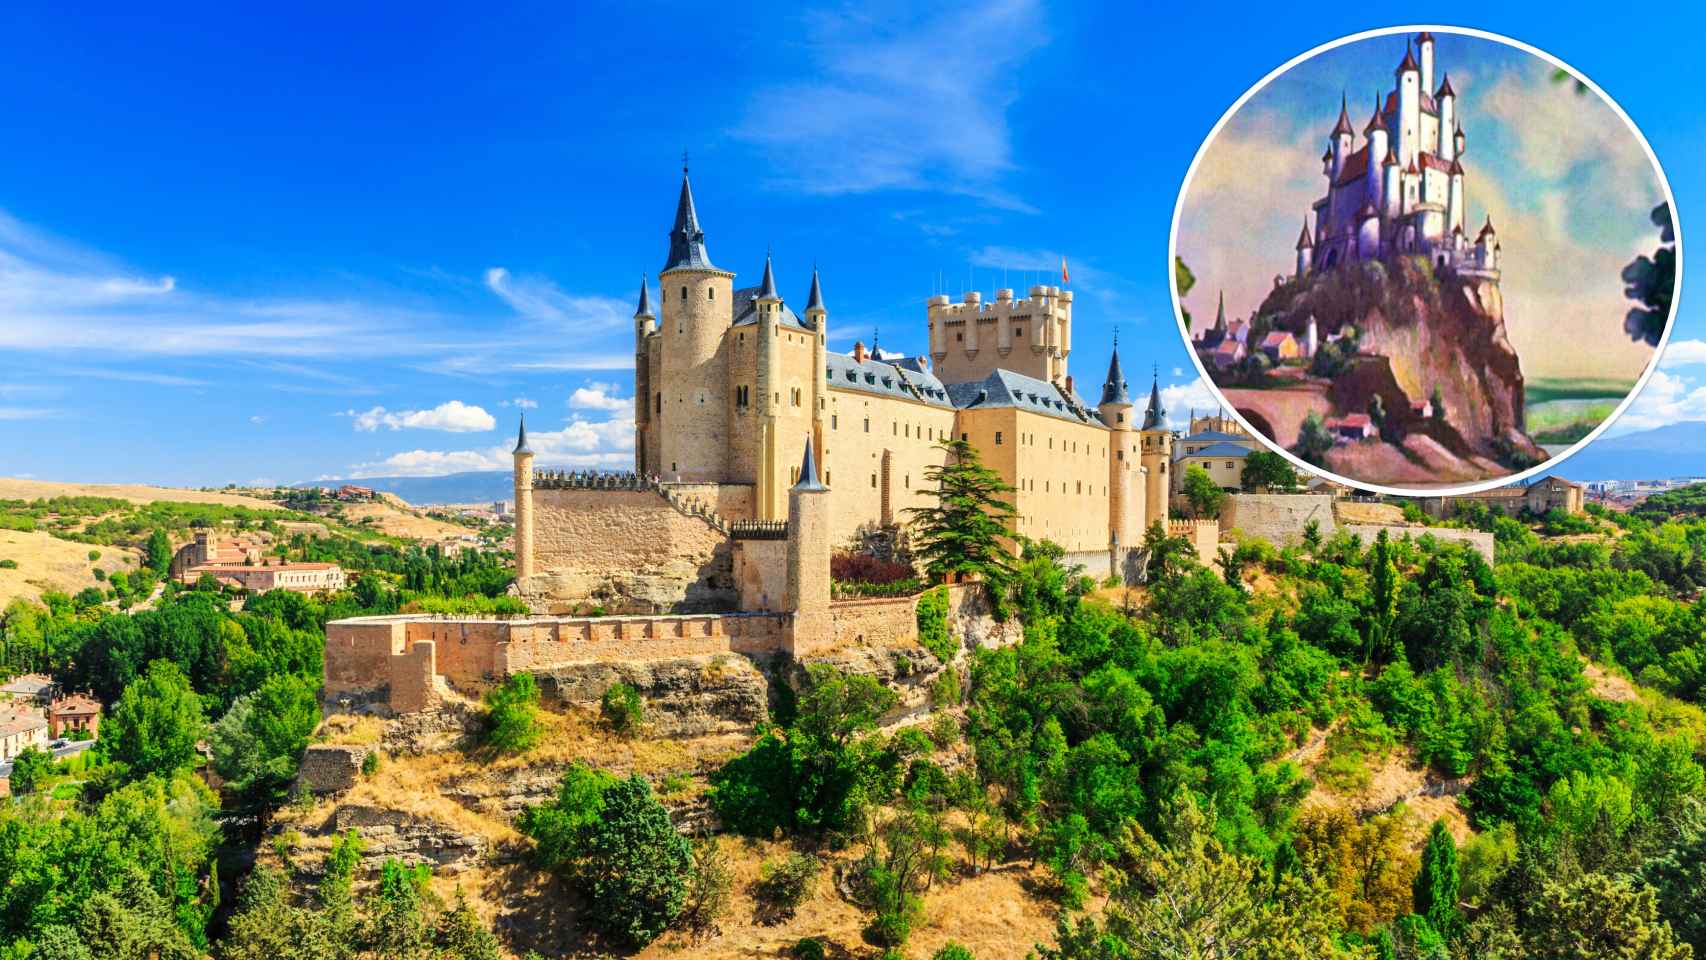 El castillo de película que inspiró a Disney está en Castilla y León